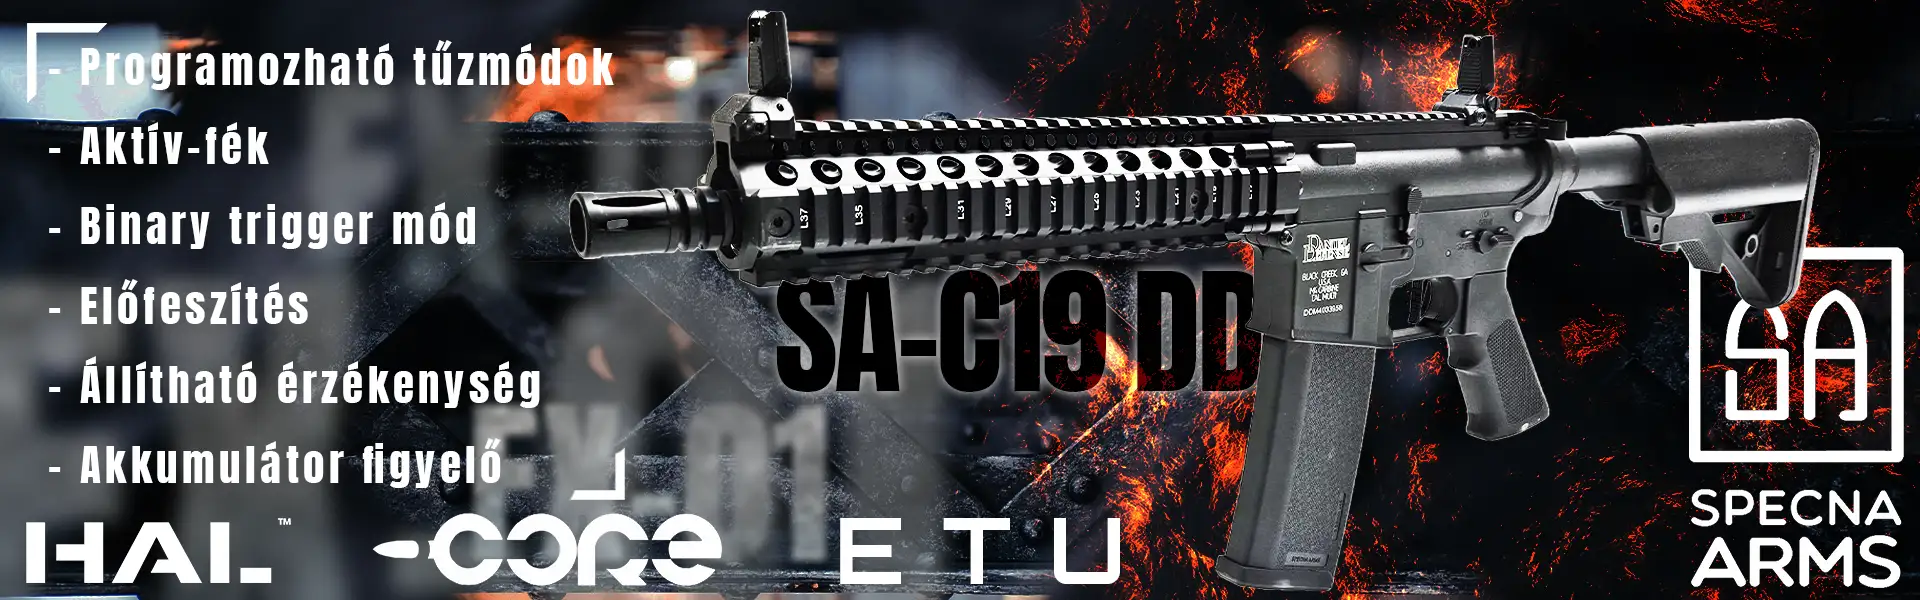 Specna Arms SA-C19 ETU